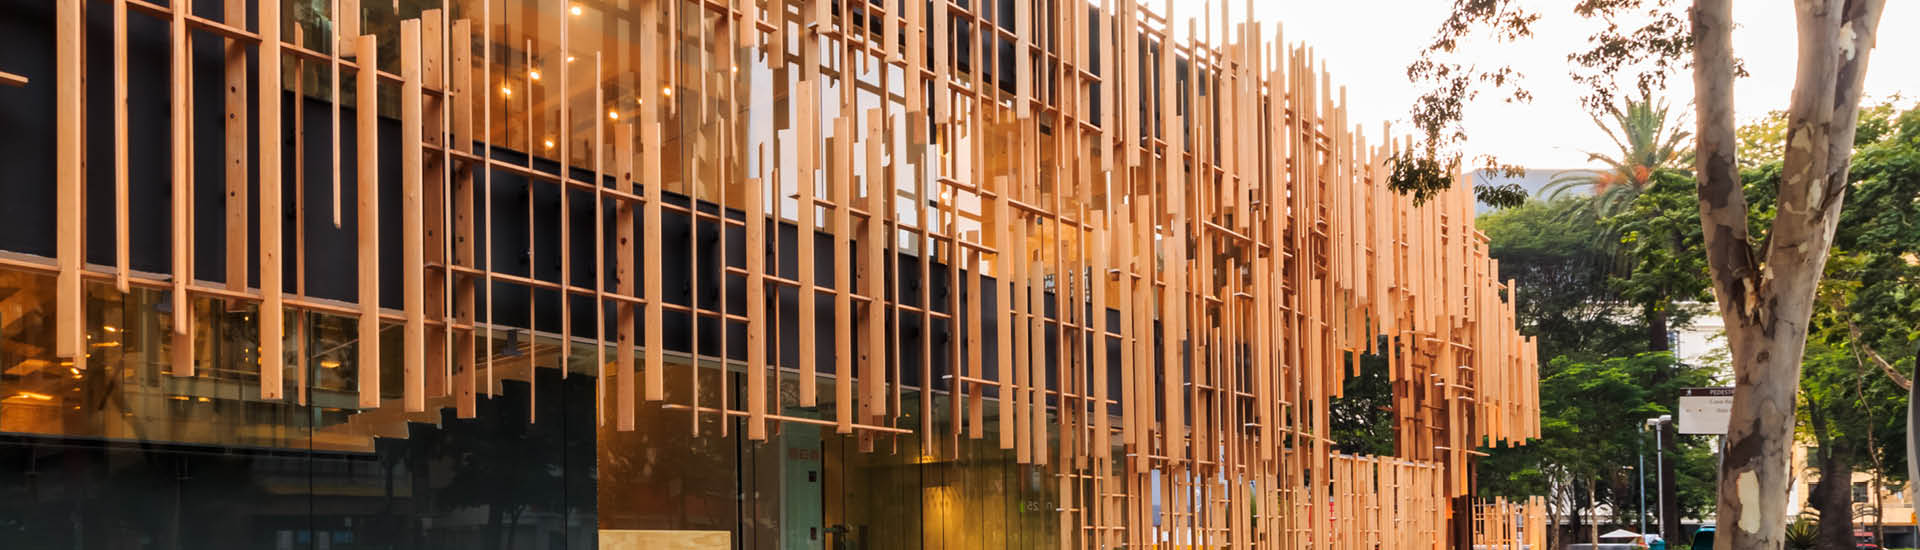 Detalhe da fachada da JHSP de madeira hinoki.